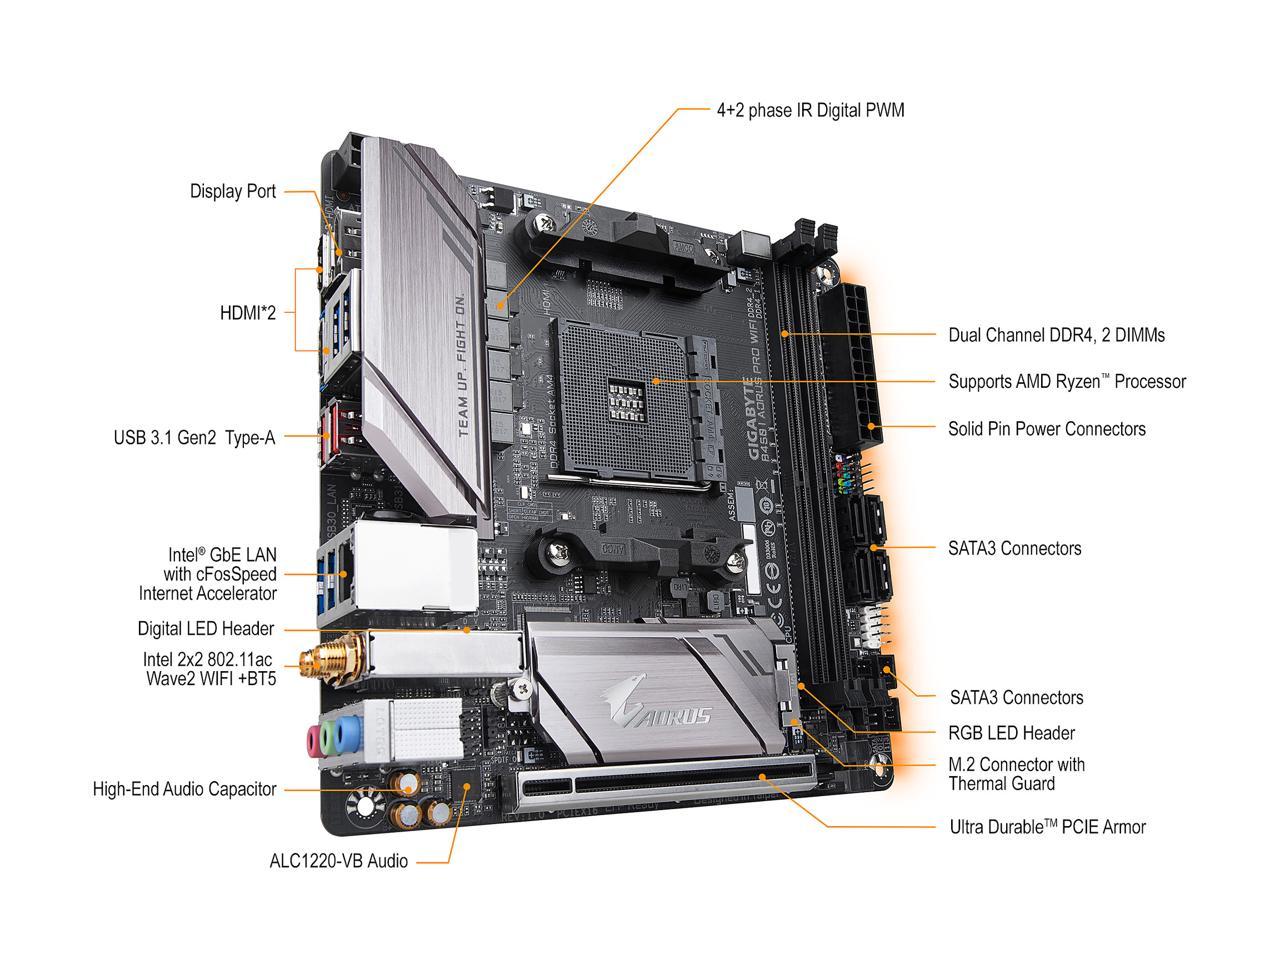 GIGABYTE B450 I AORUS PRO WIFI AM4 AMD B450 SATA 6Gb/s USB 3.1 HDMI Mini ITX AMD Motherboard